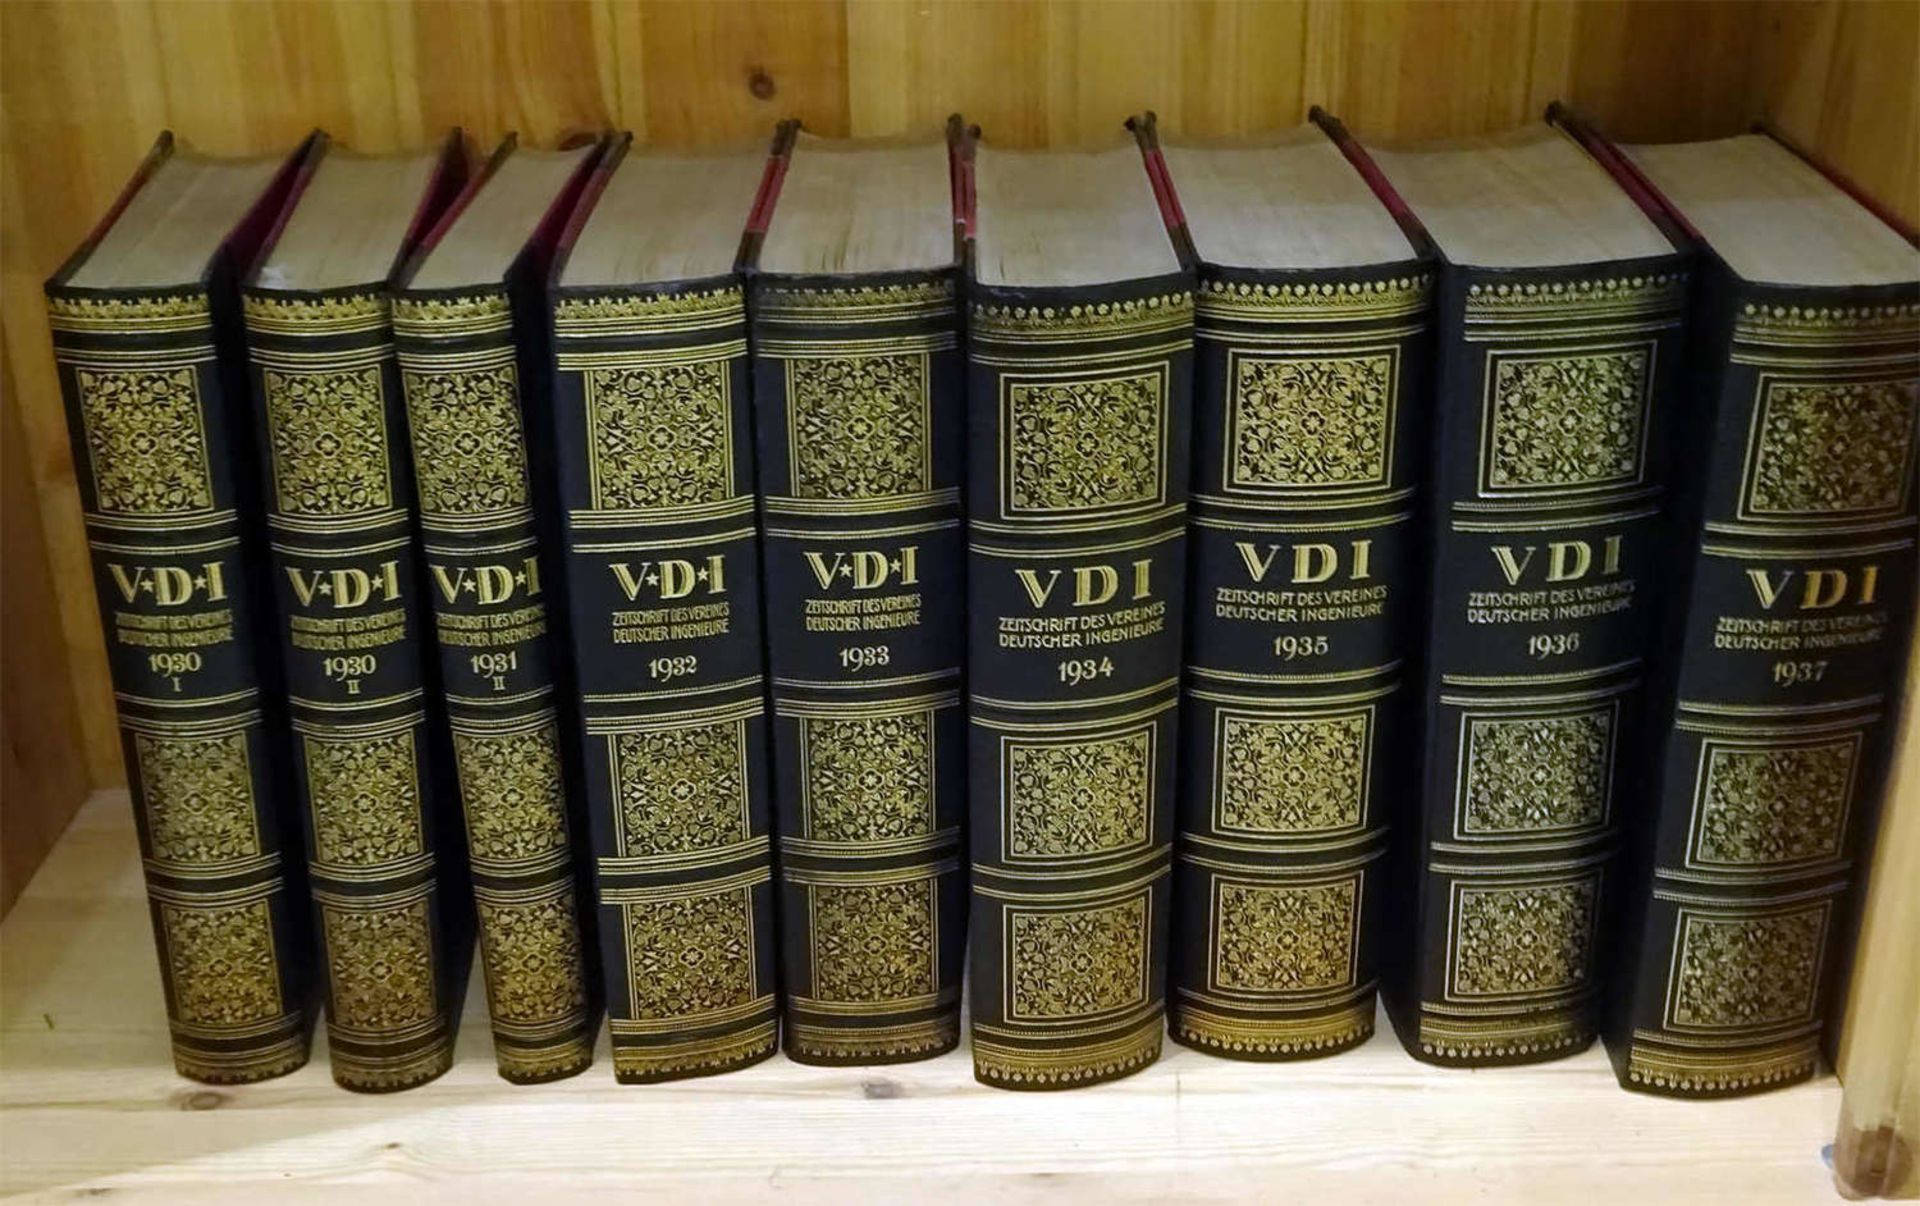 VDI, Zeitschrift des Vereines Deutscher Ingenieure. Vorhanden 1906, 1924, 1926 Bd. 1+II, 1927 Bd.I+ - Bild 3 aus 3